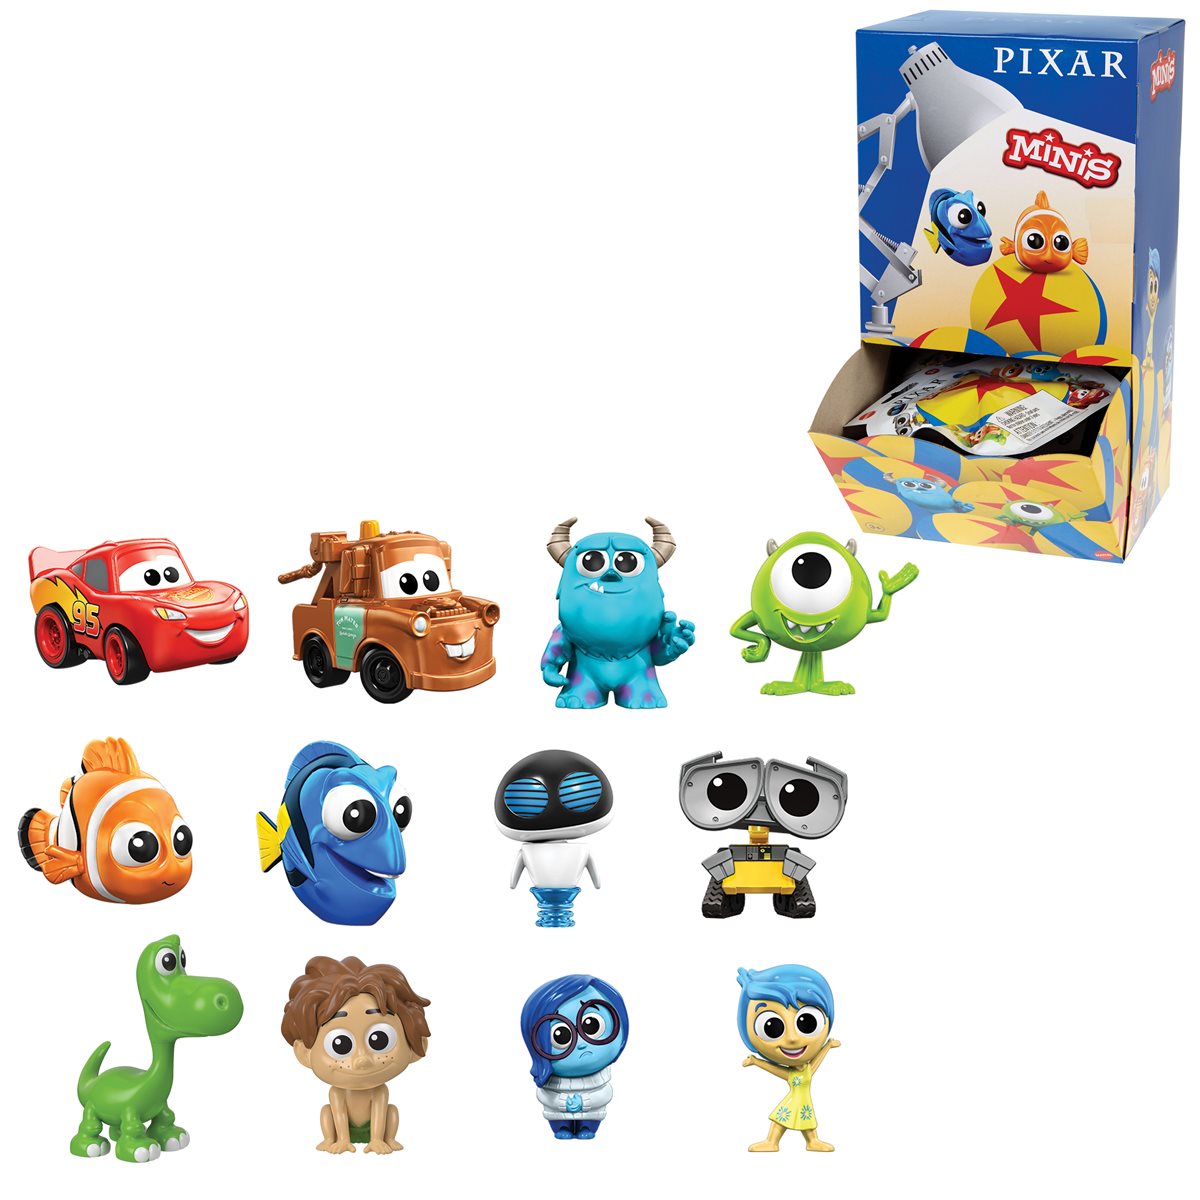 Игрушка пиксар. Игрушки Toy story 4 Disney.Pixar Mattel Minis. Игрушка Дисней Пиксар. Игрушки Дисней фигурки Пиксар. Funko Pixar Mini.